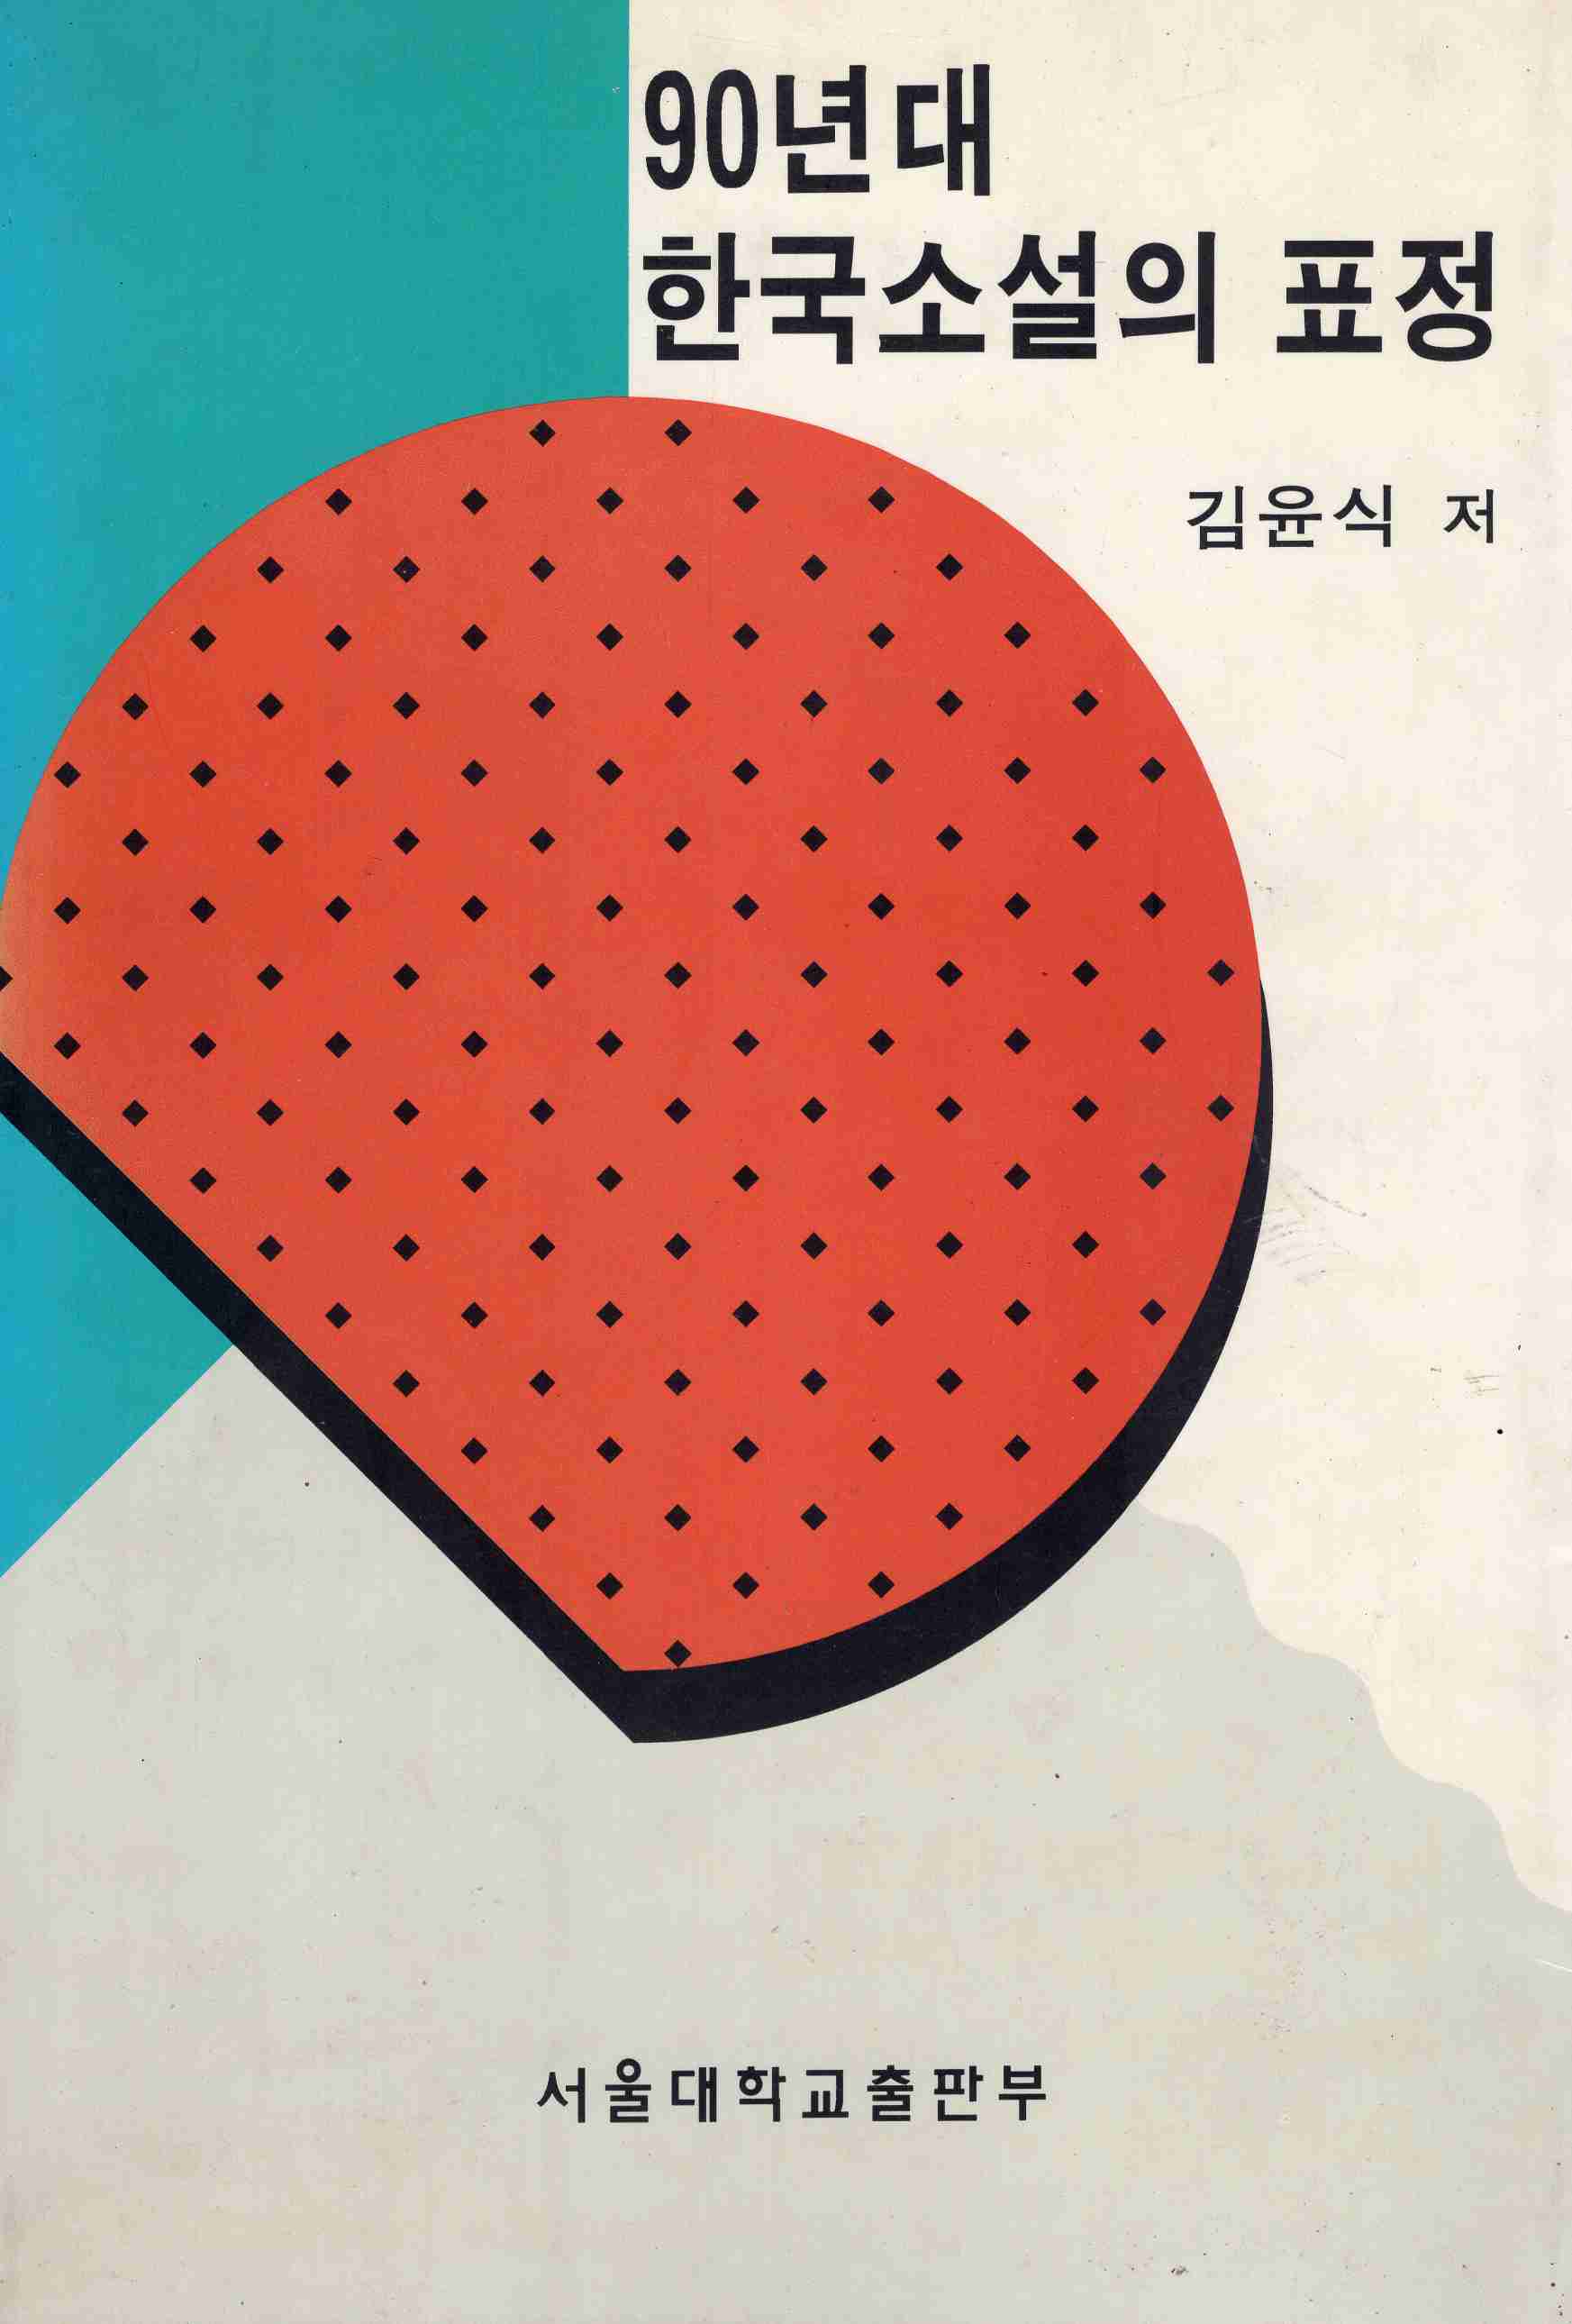 90년대 한국소설의 표정